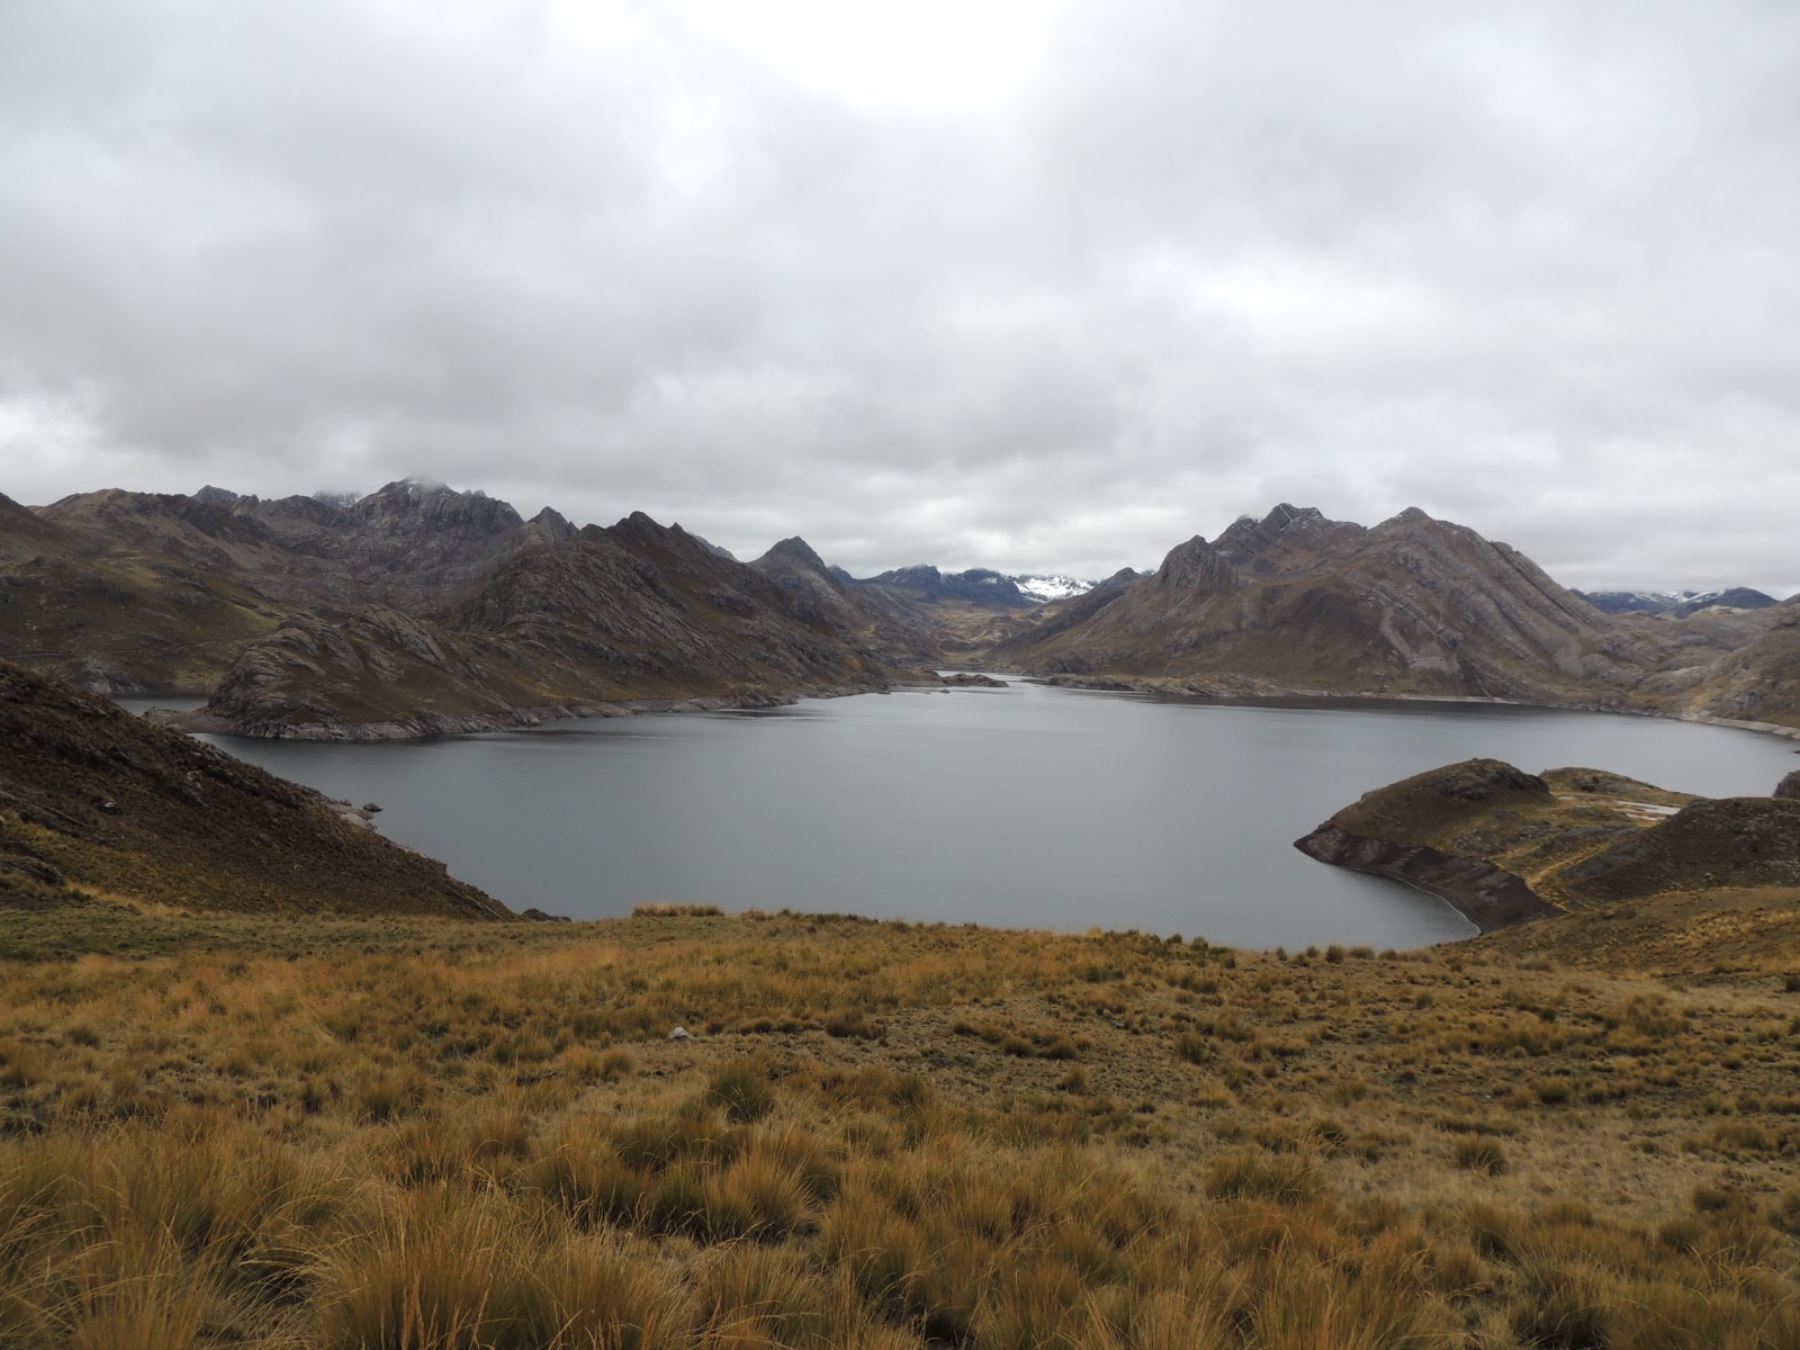 El Ministerio de Desarrollo Agrario y Riego anunció la construcción de 60 qochas en Puno para enfrentar el déficit hídrico que afecta a dicha región, en especial a los productores agrarios. ANDINA/Difusión